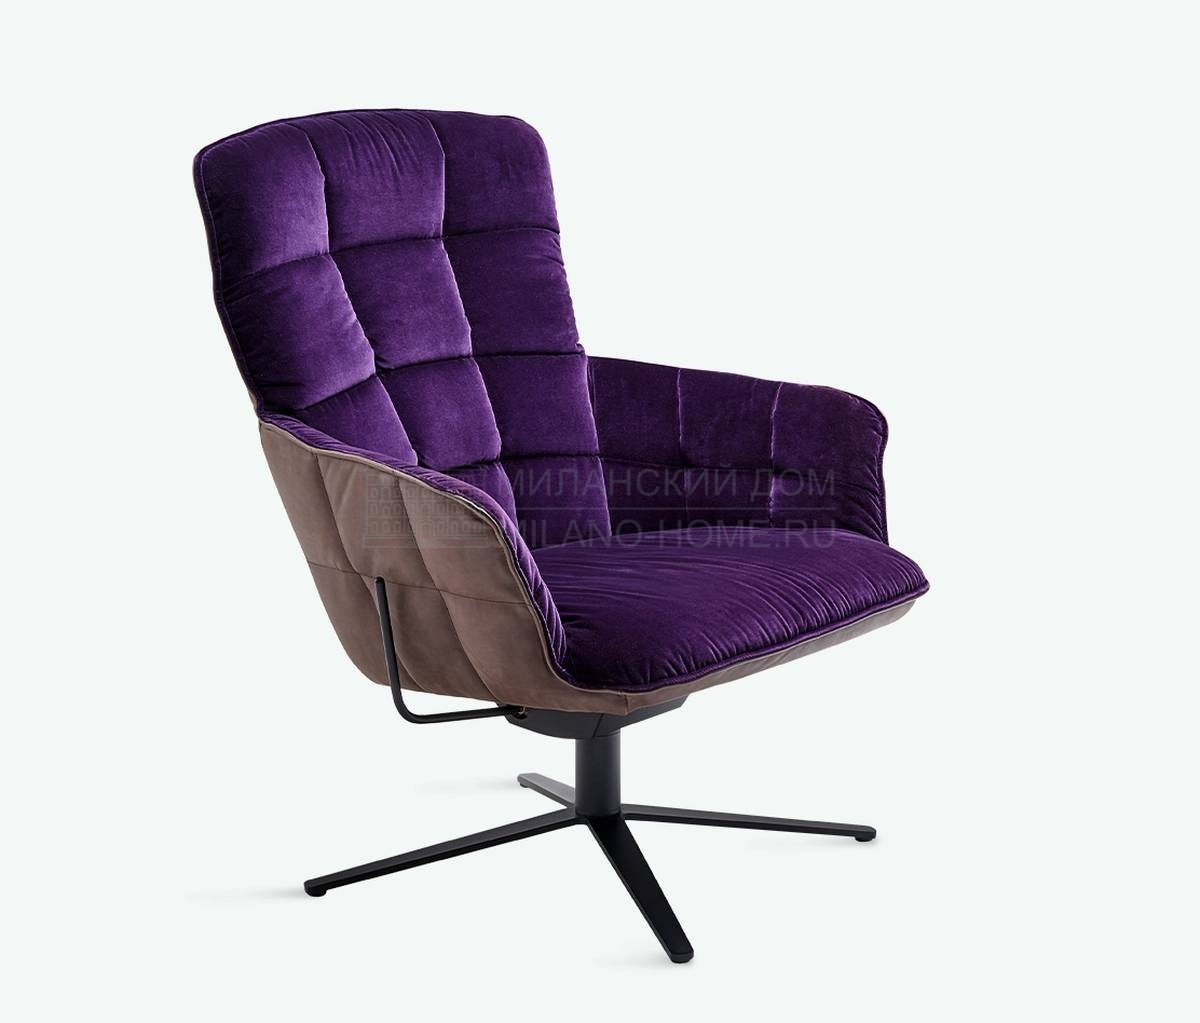 Лаунж кресло Marla armchair purple lounge из Германии фабрики FREIFRAU